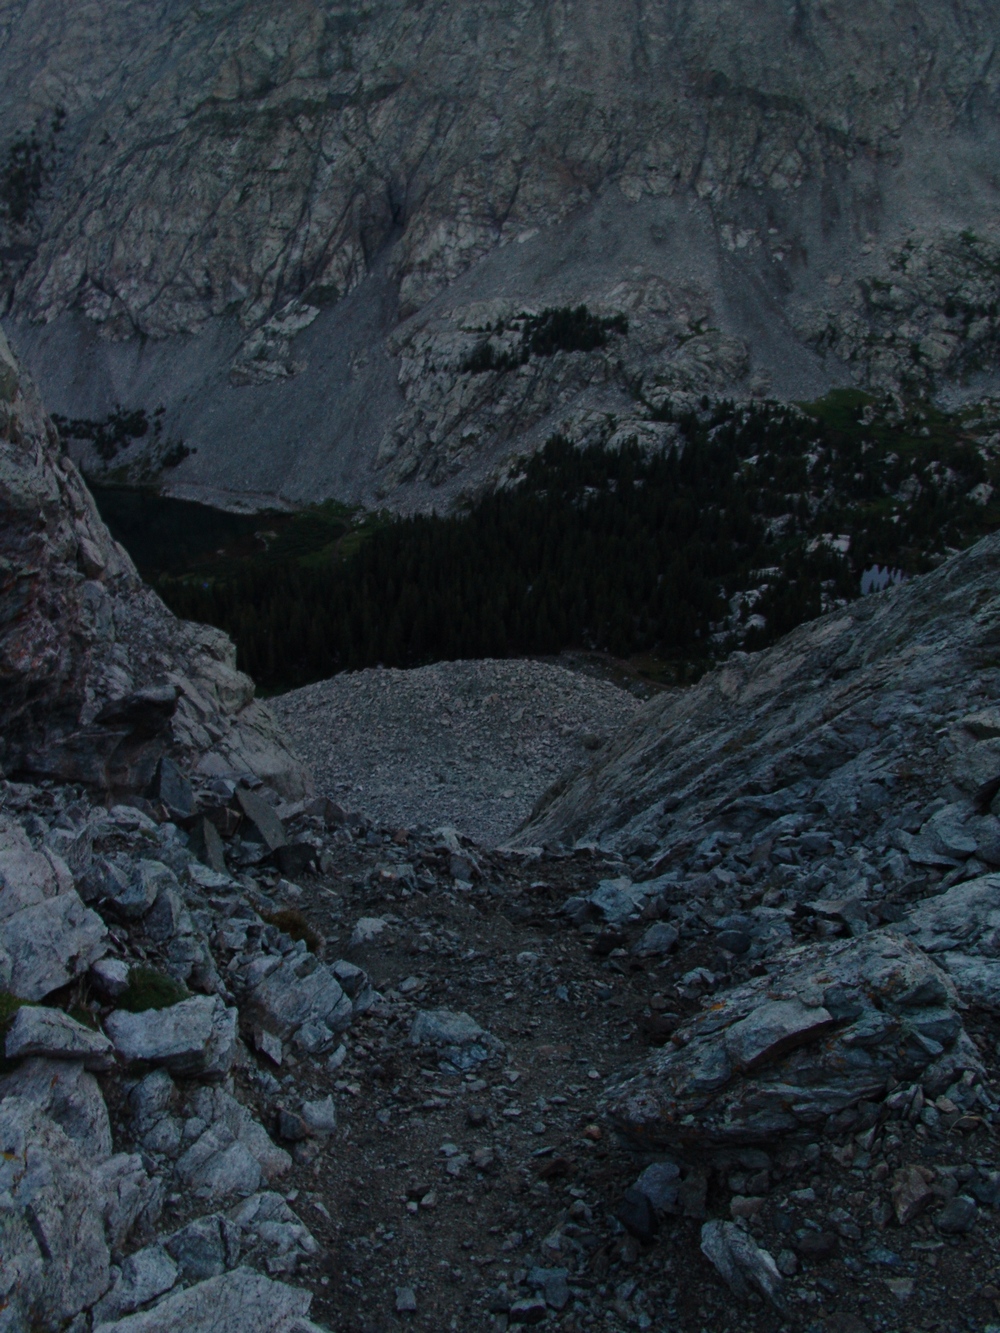 1st gully of Little Bear Peak